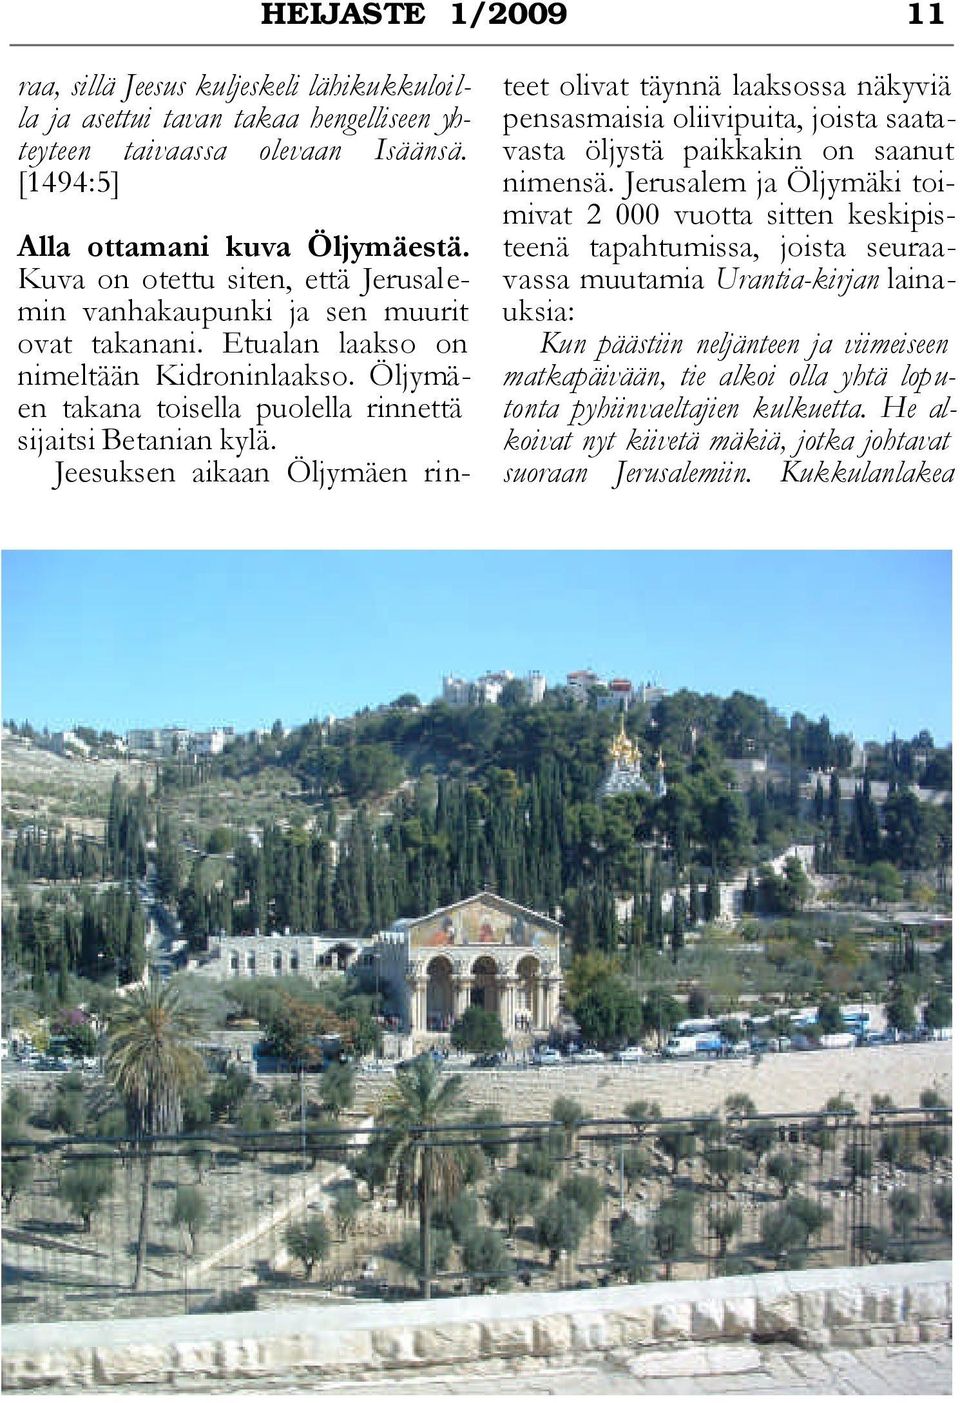 Jeesuksen aikaan Öljymäen rinteet olivat täynnä laaksossa näkyviä pensasmaisia oliivipuita, joista saatavasta öljystä paikkakin on saanut nimensä.